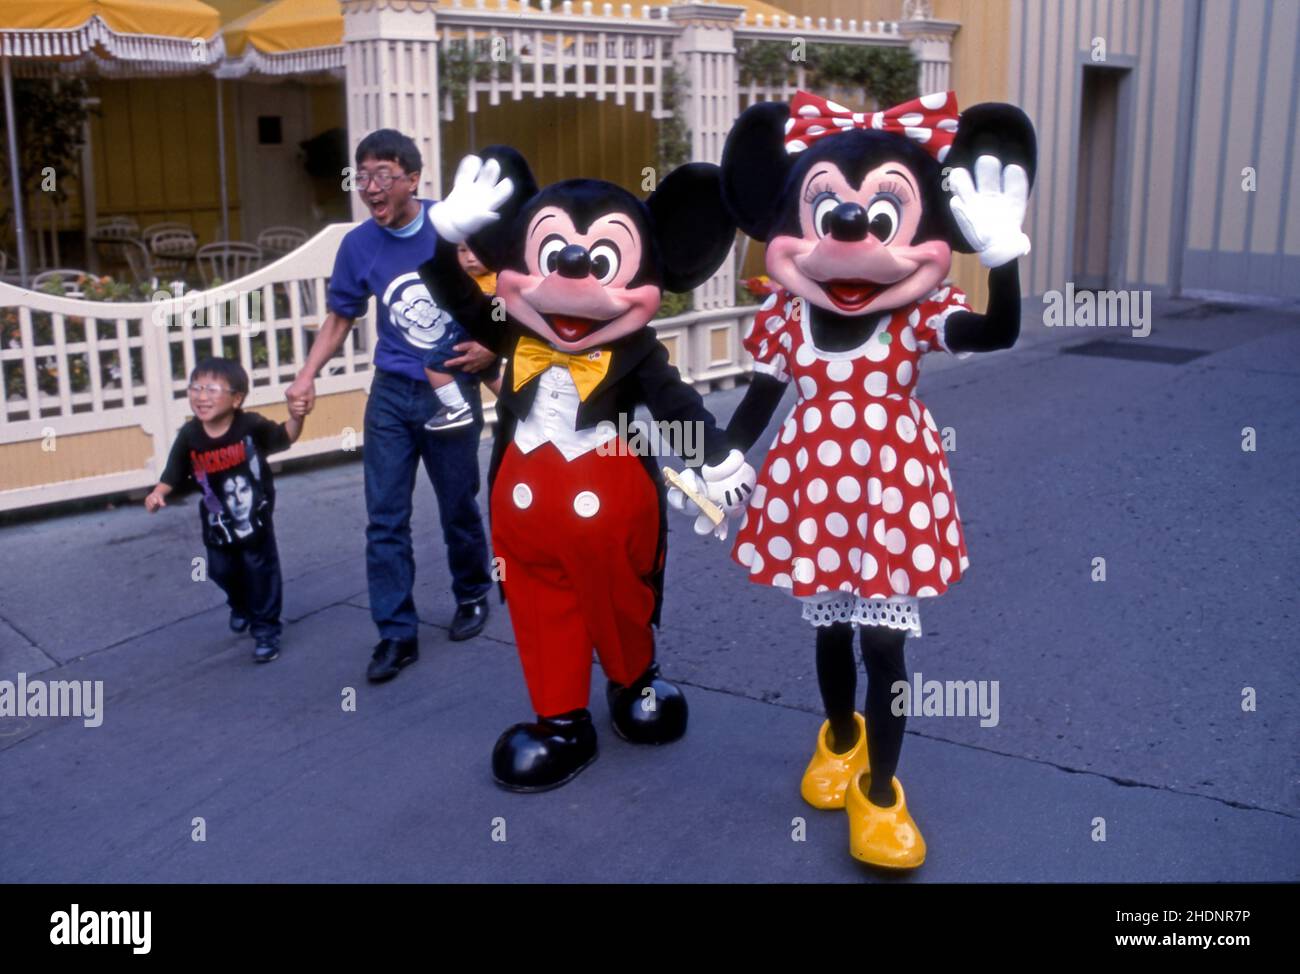 Visitatori con personaggi in costume di Topolino e Minnie mouse all'originale Disneyland di Anaheim, California, USA. Foto Stock